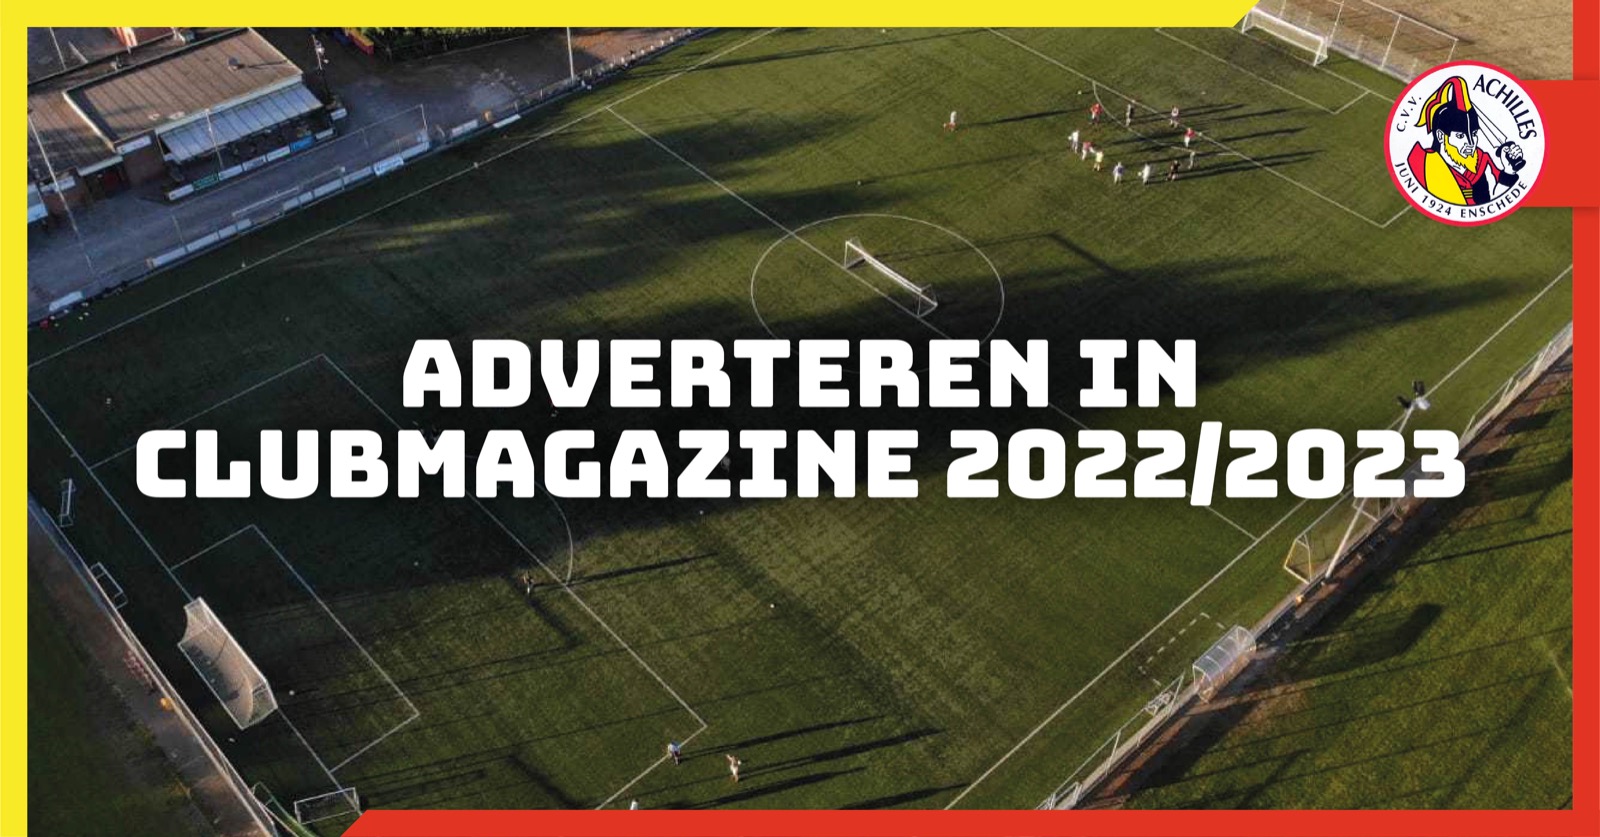 Adverteer met jouw bedrijf in Clubmagazine 2022/2023!